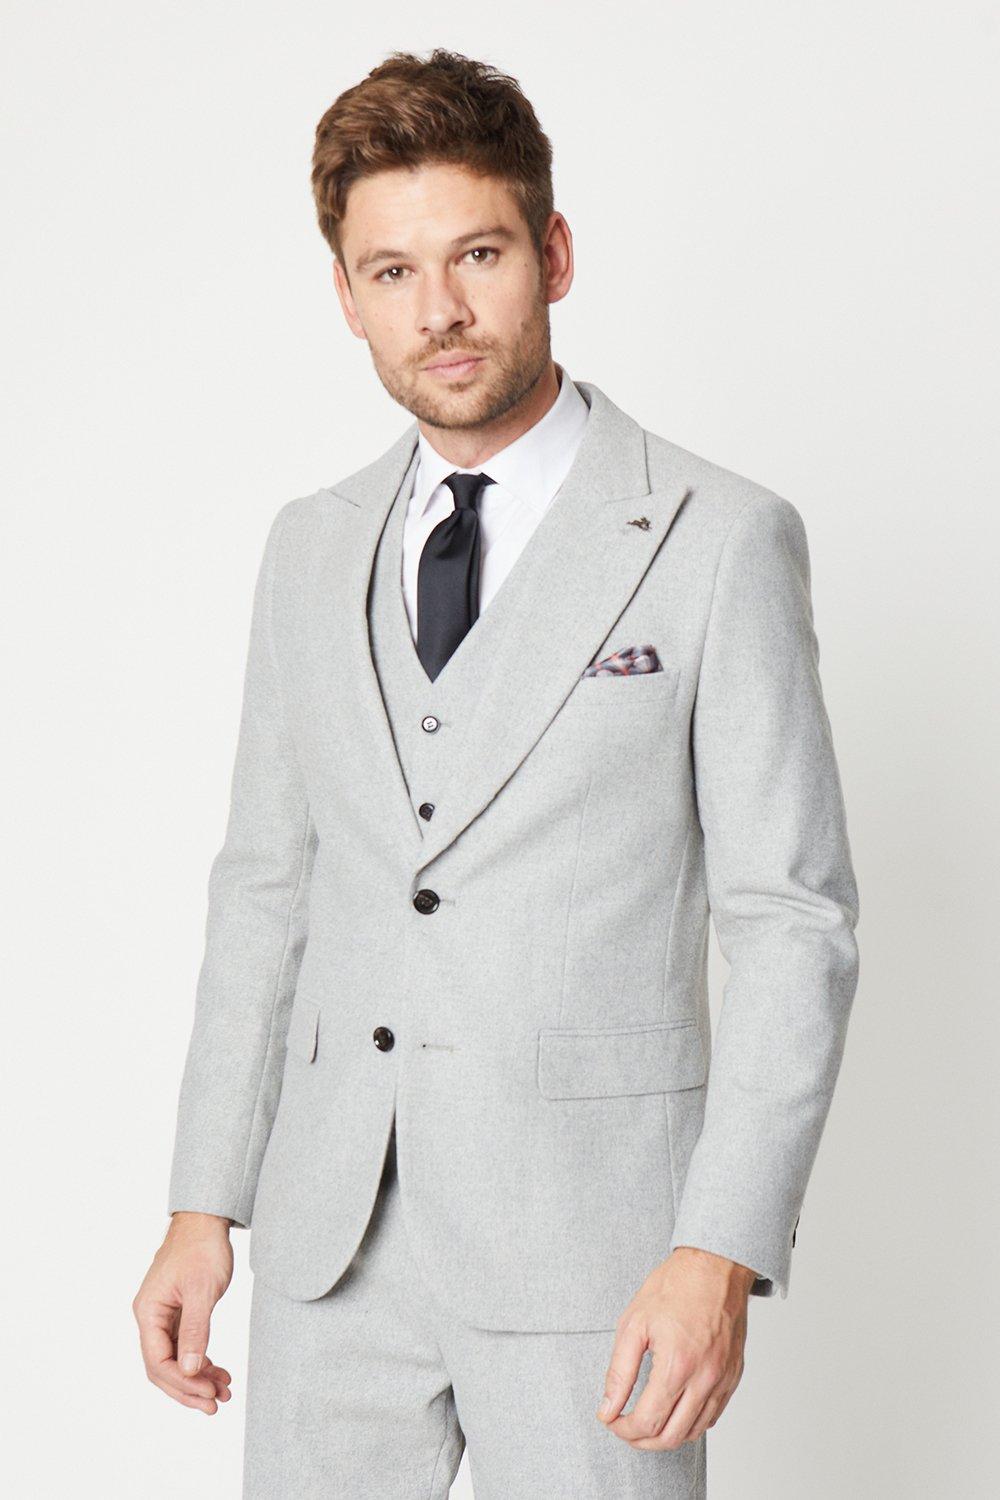 Mens Slim Fit Grey Tweed Suit Jacket